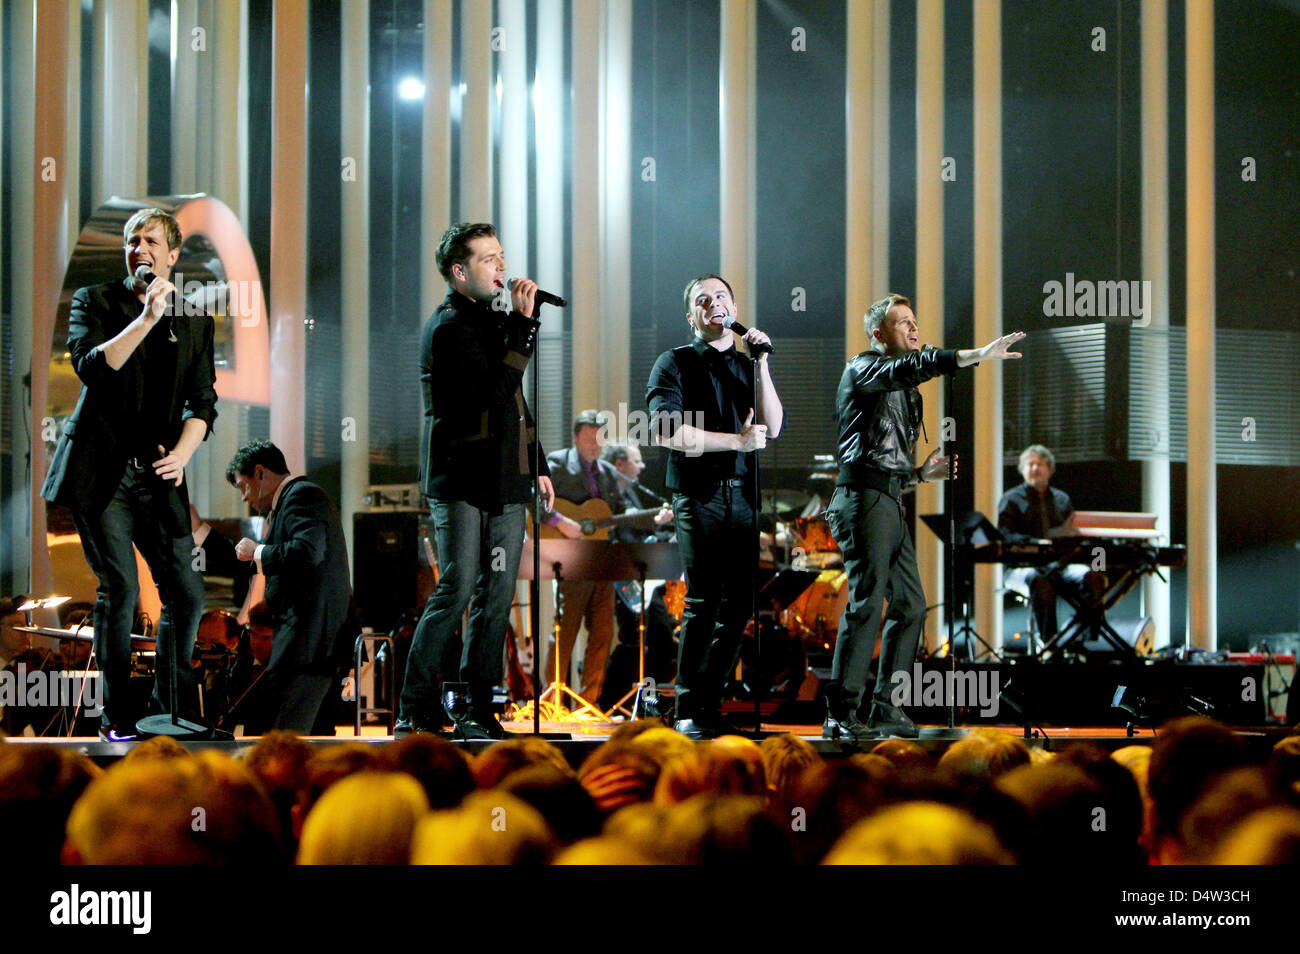 La band Westlife compie durante il Premio Nobel per la pace con un concerto presso la Oslo Spektrum di Oslo, Norvegia del 11 dicembre 2009. Il concerto onora questo anno il premio Nobel per la pace Barack Obama presidente degli Stati Uniti. Foto: Patrick van Katwijk Foto Stock